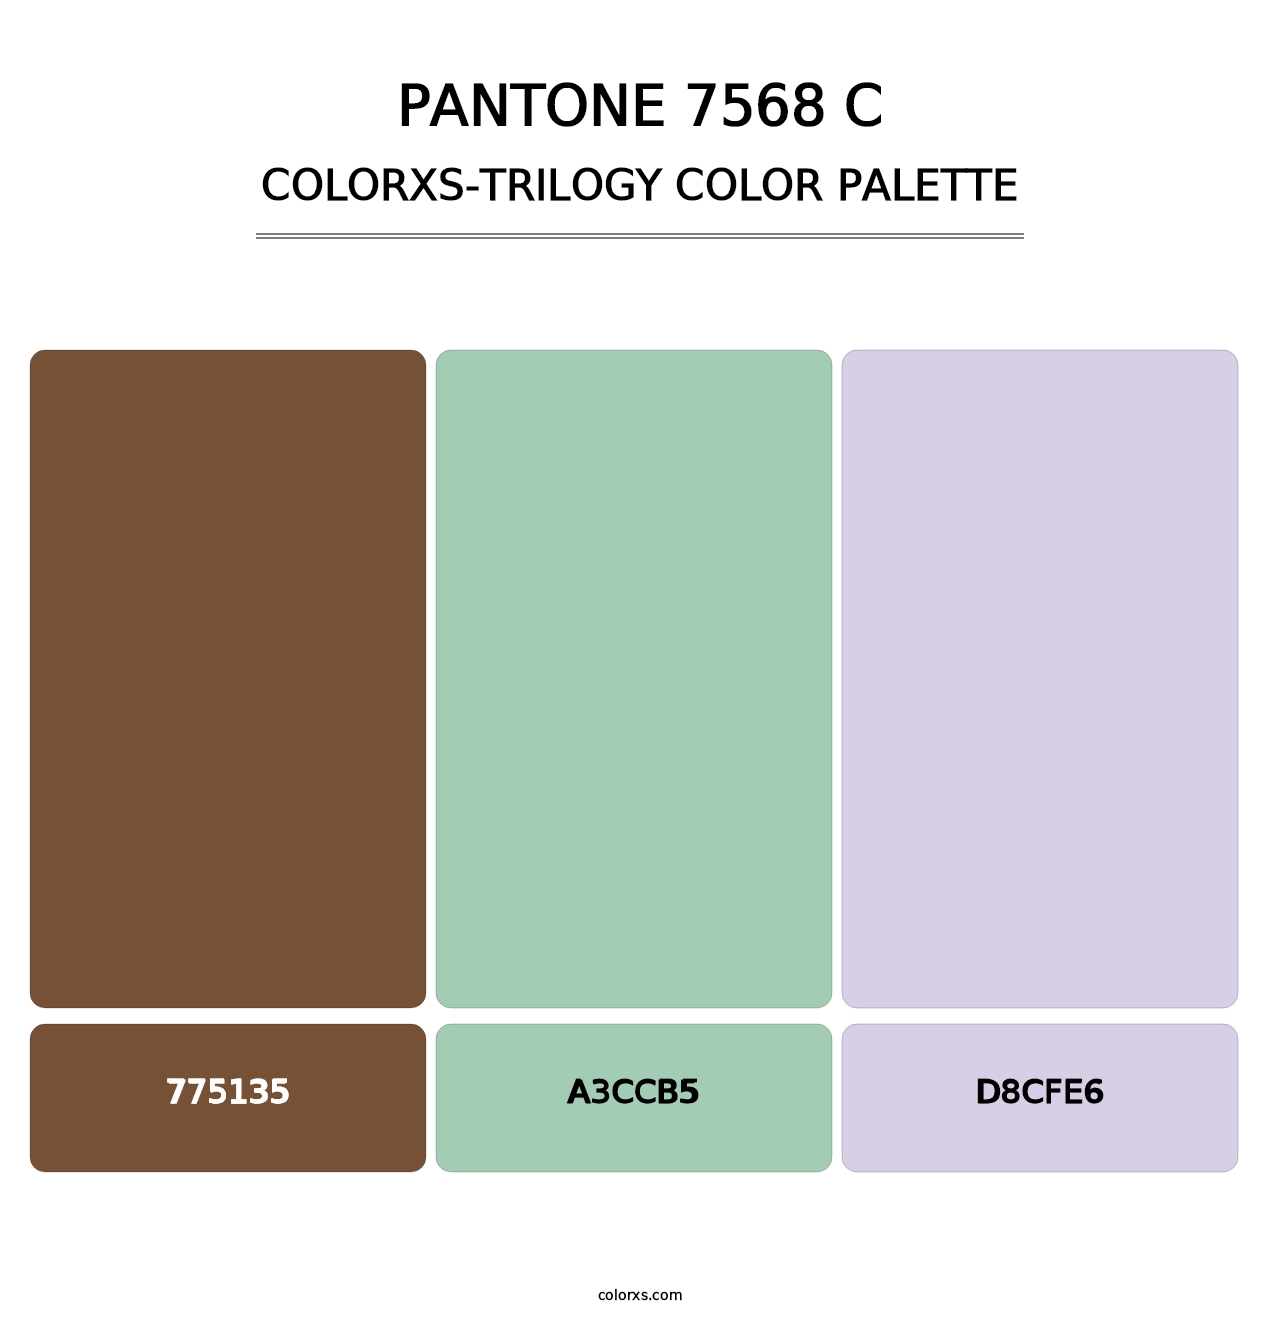 PANTONE 7568 C - Colorxs Trilogy Palette